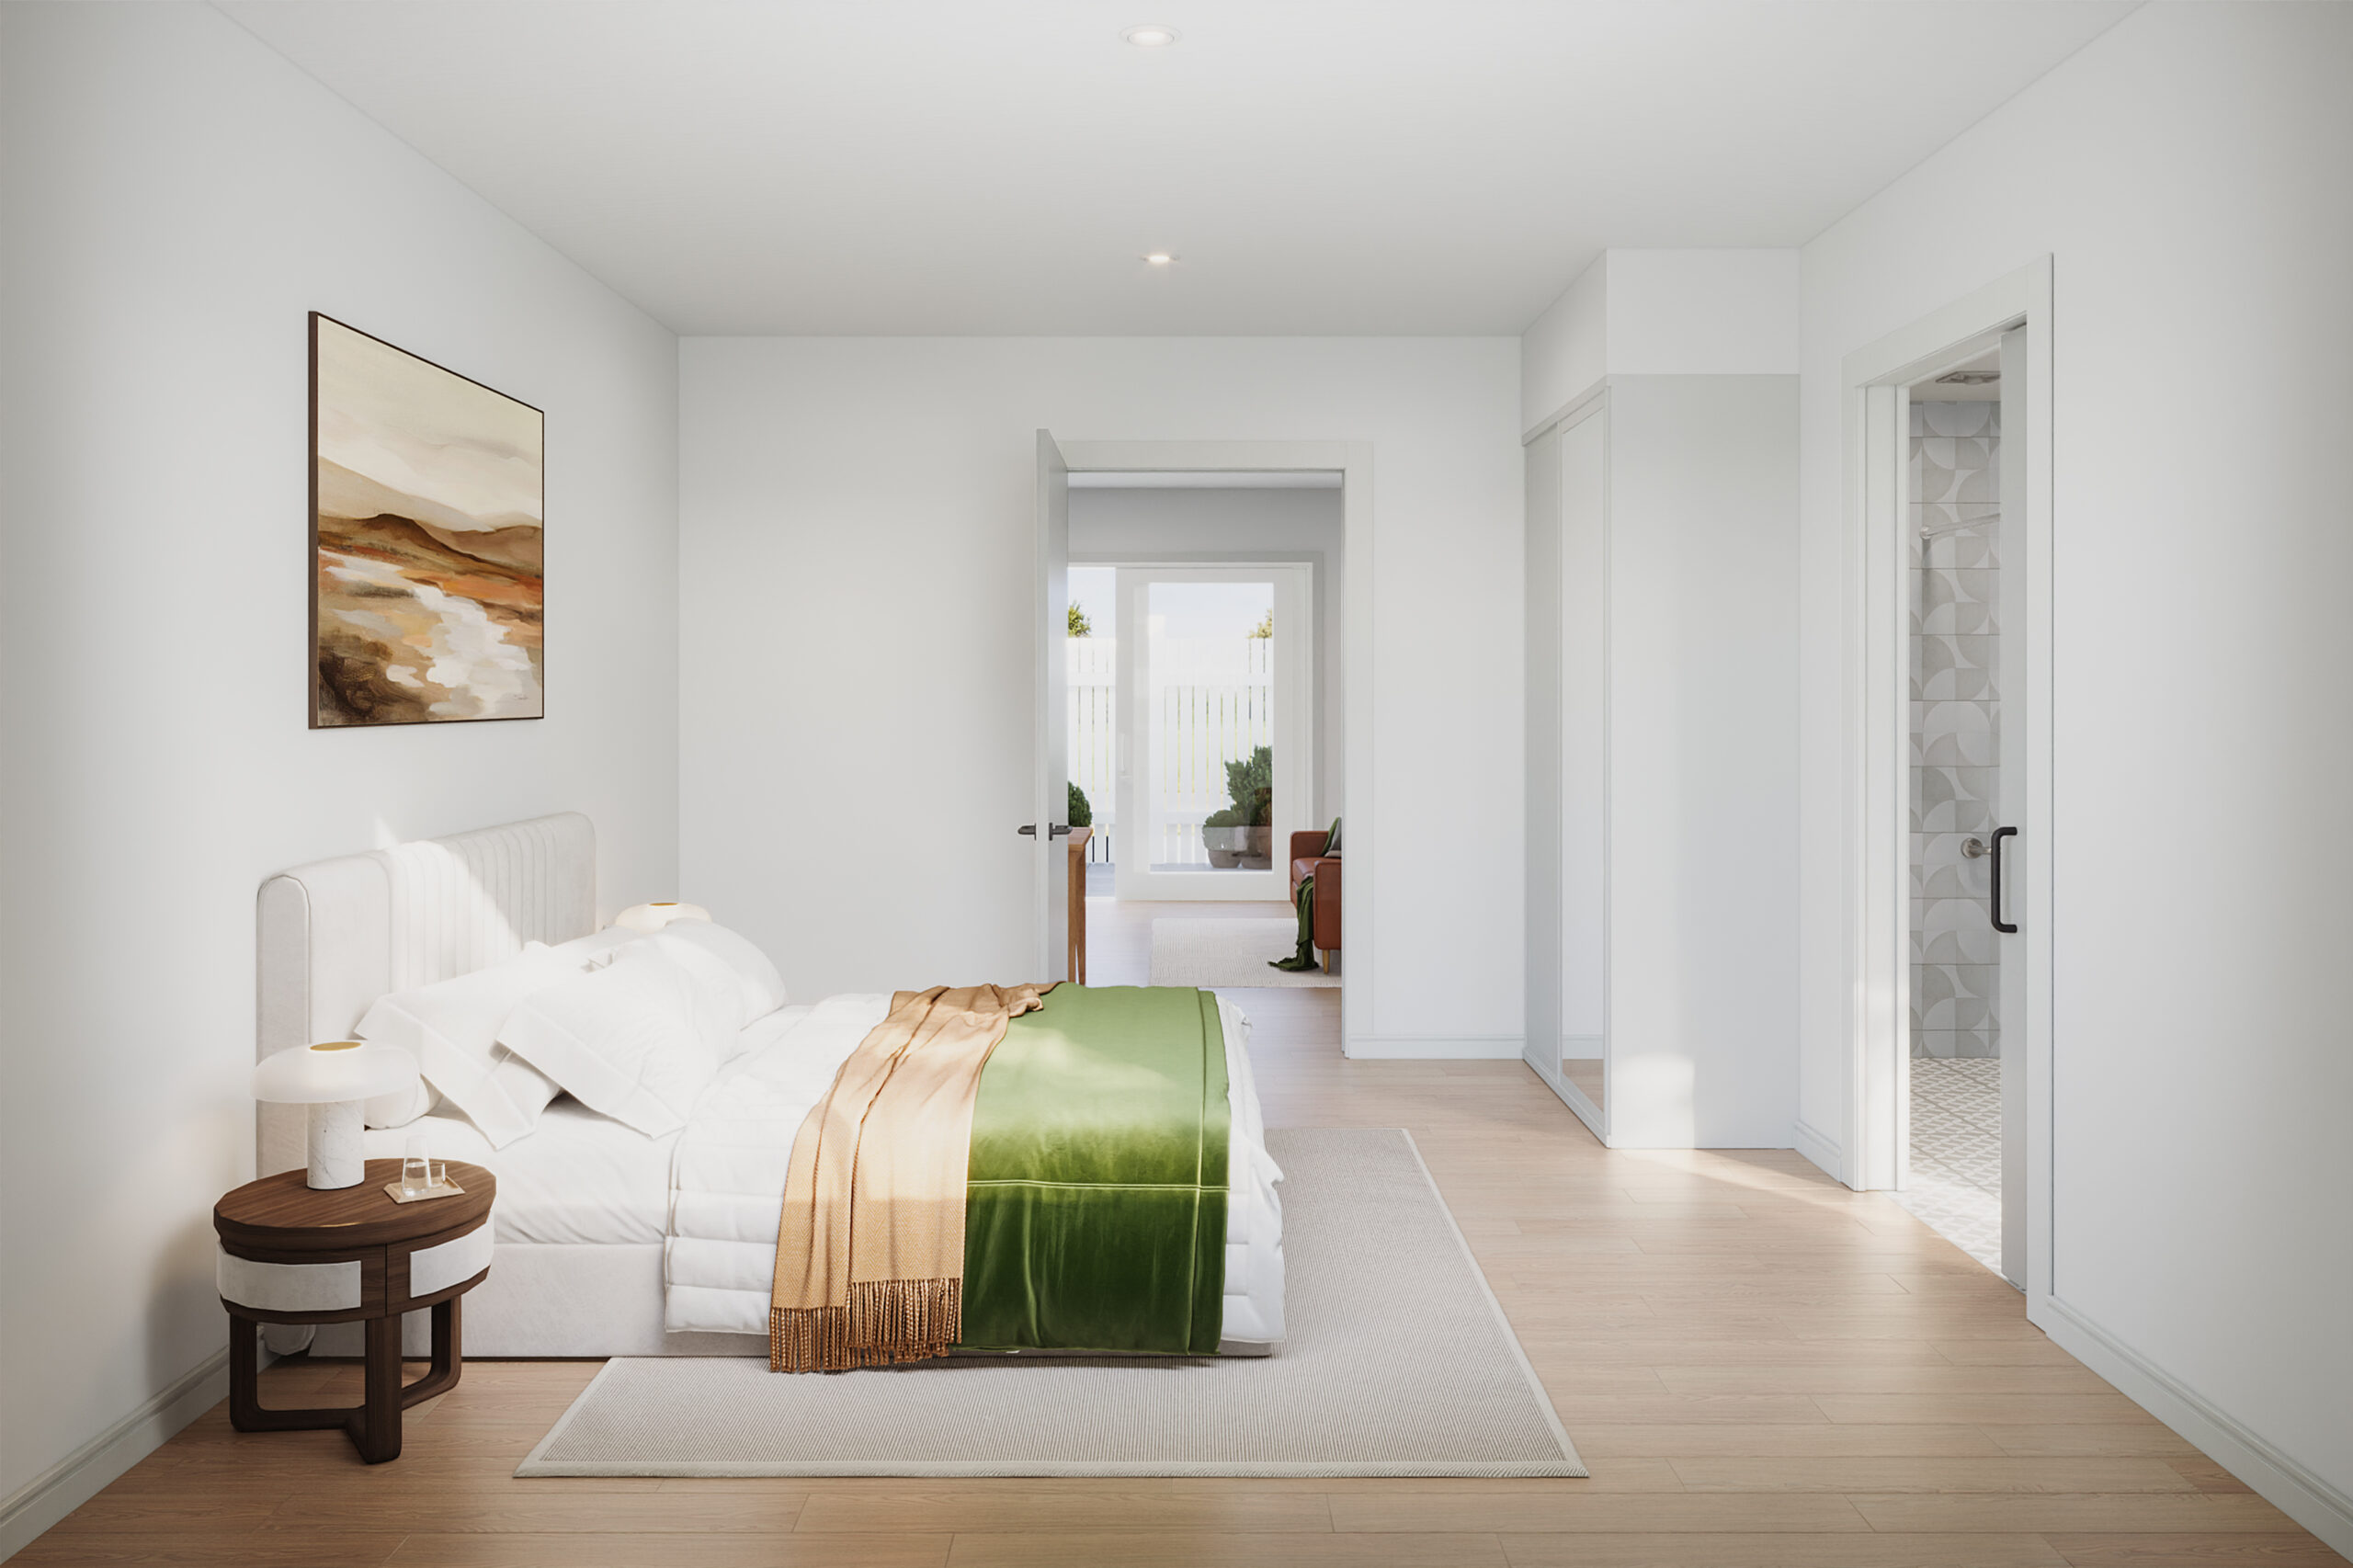 Corella: Six Charming 1 bedroom villas in Albury